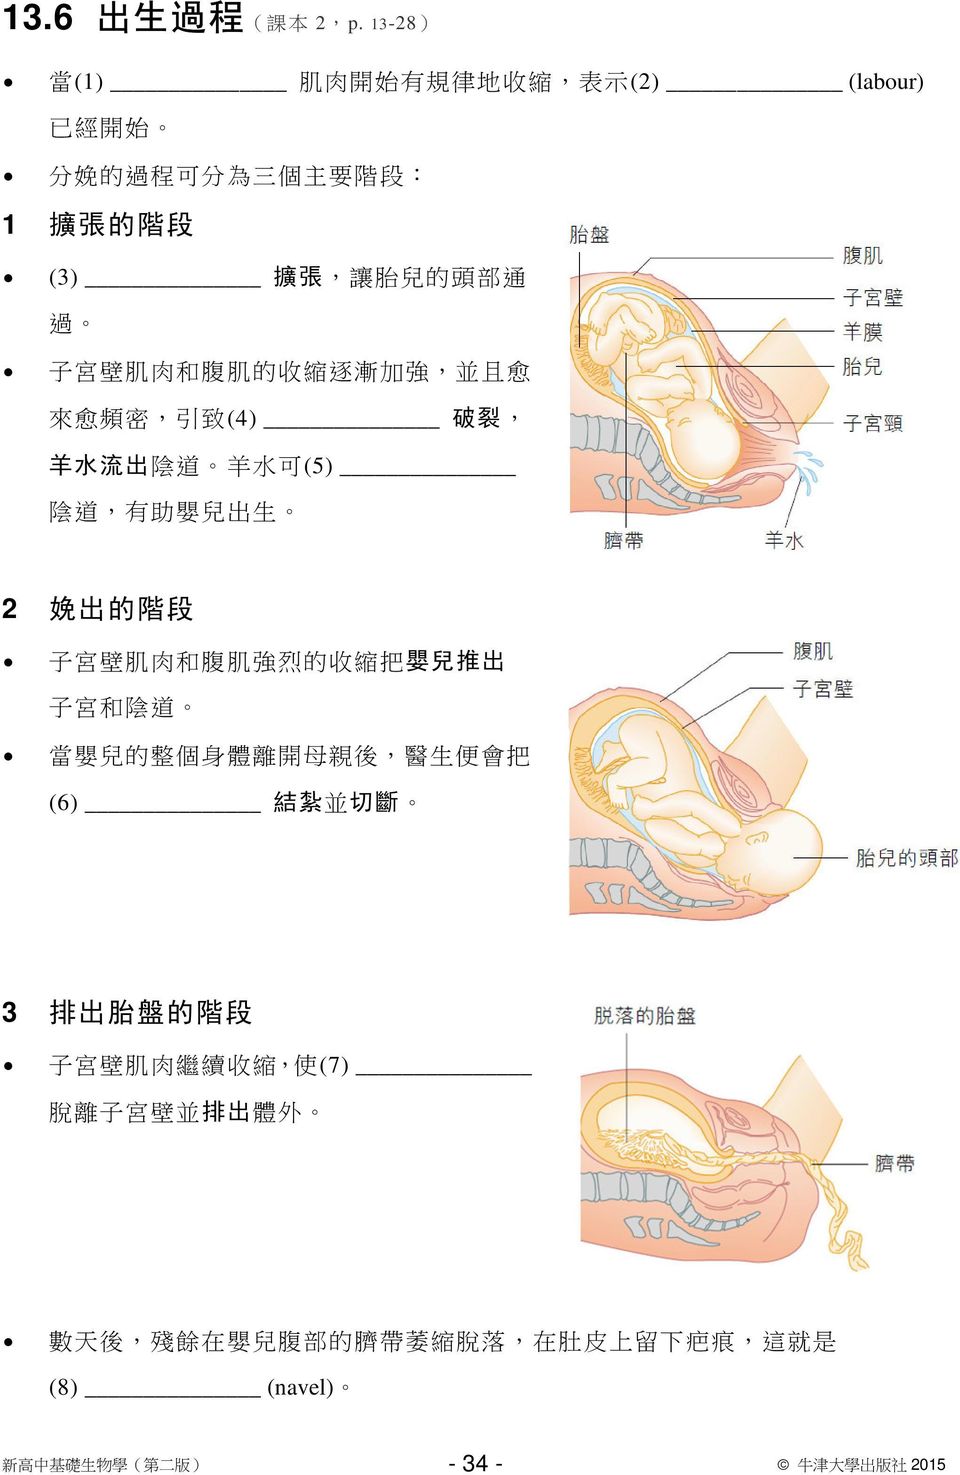 壁 肌 肉 和 腹 肌 的 收 縮 逐 漸 加 強, 並 且 愈 來 愈 頻 密, 引 致 (4) 破 裂, 羊 水 流 出 陰 道 羊 水 可 (5) 陰 道, 有 助 嬰 兒 出 生 2 娩 出 的 階 段 子 宮 壁 肌 肉 和 腹 肌 強 烈 的 收